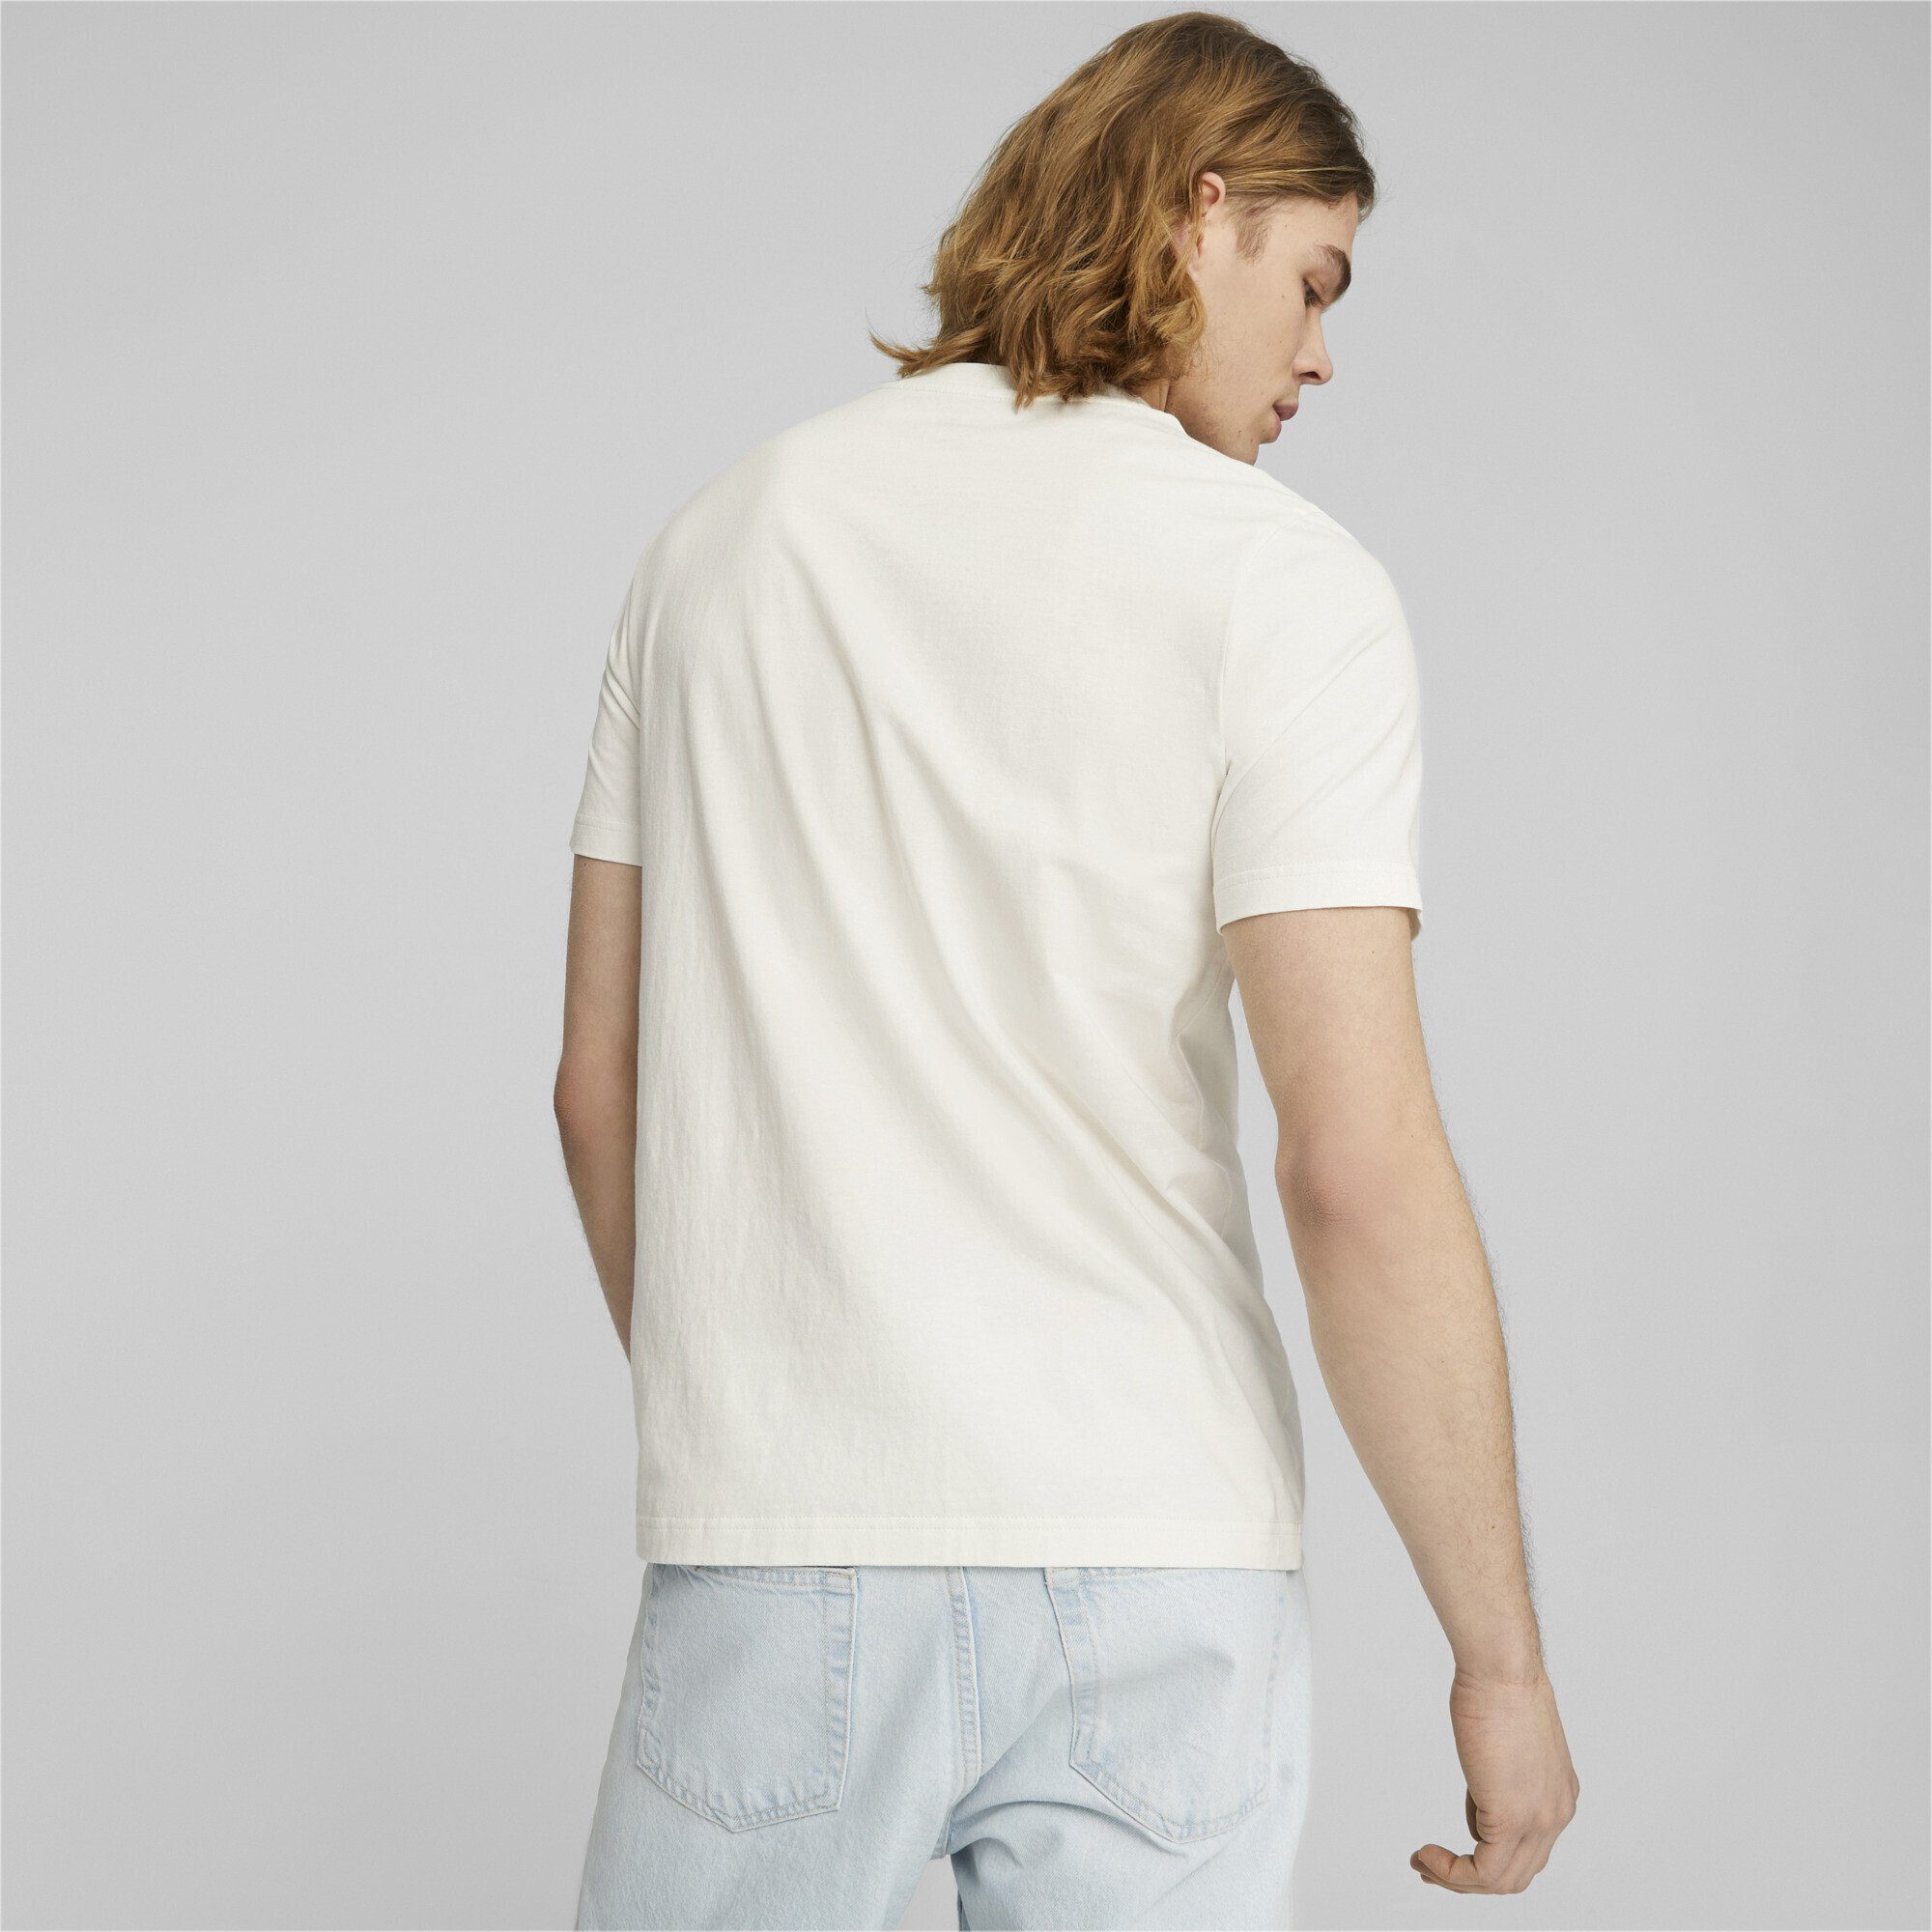 PUMA T-Shirt Herren SQUAD PUMA T-Shirt White Warm